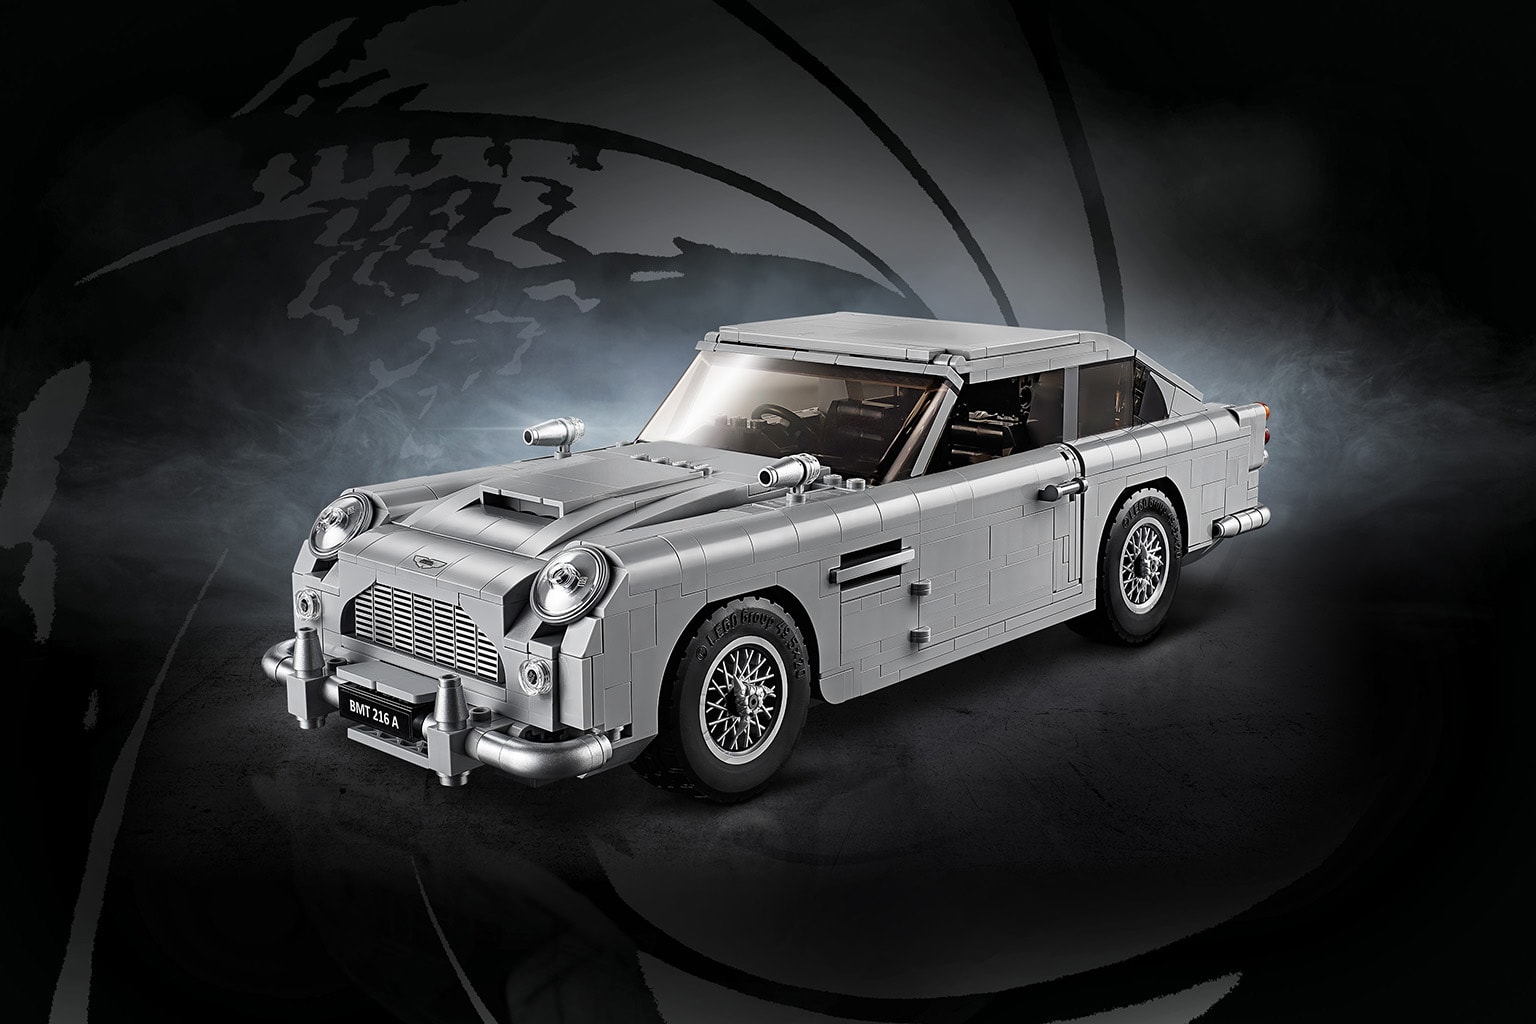 LEGO Aston Martin DB5 James Bond